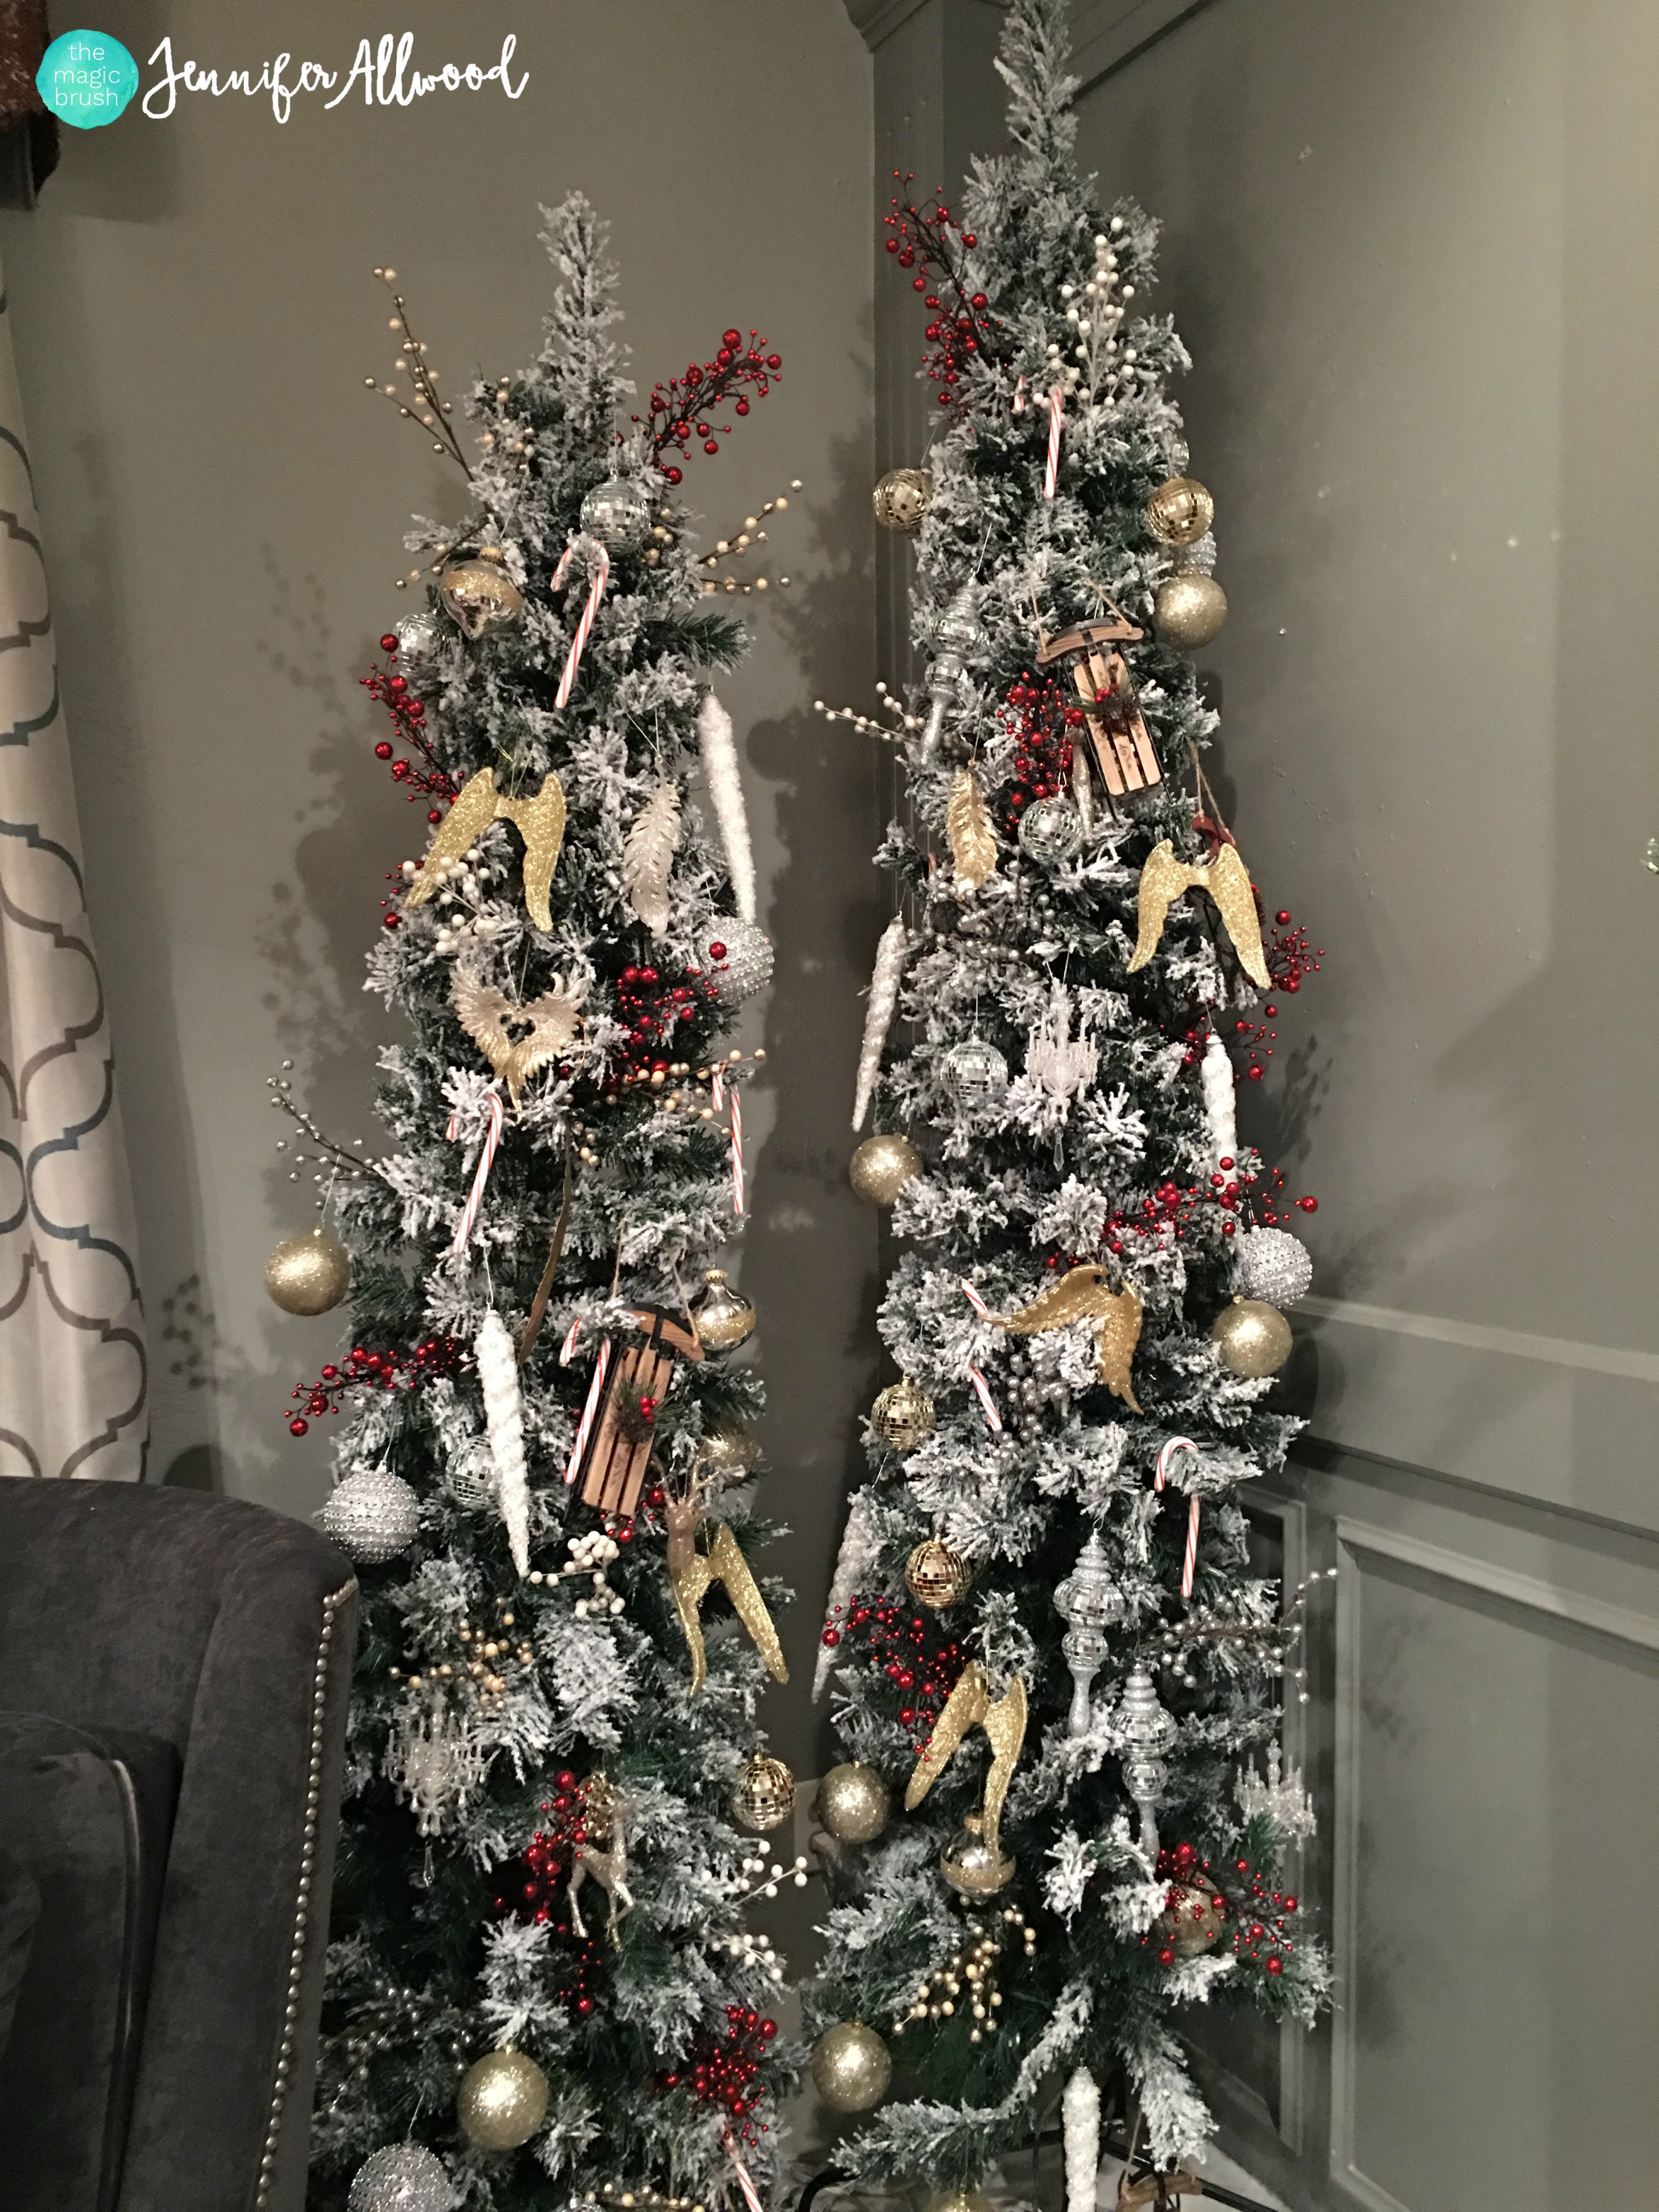 Pencil Christmas Tree